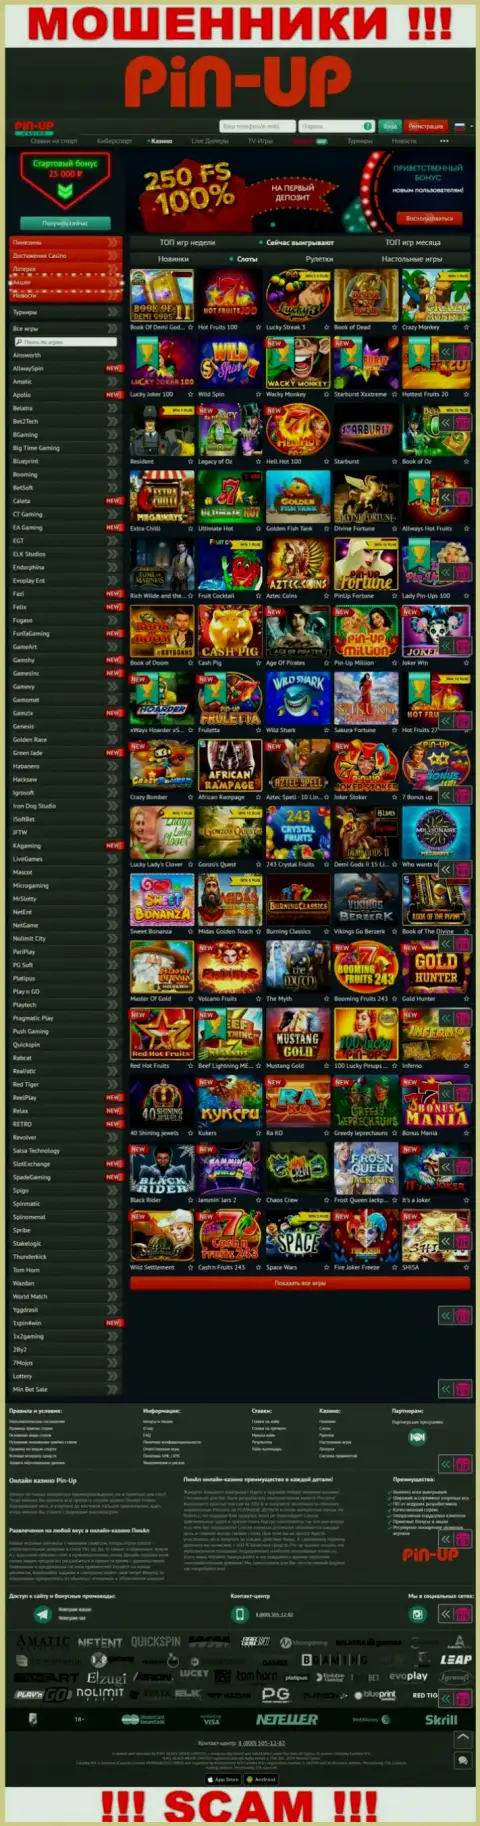 Pin-Up Casino - это официальный сайт internet мошенников Pin-Up Casino